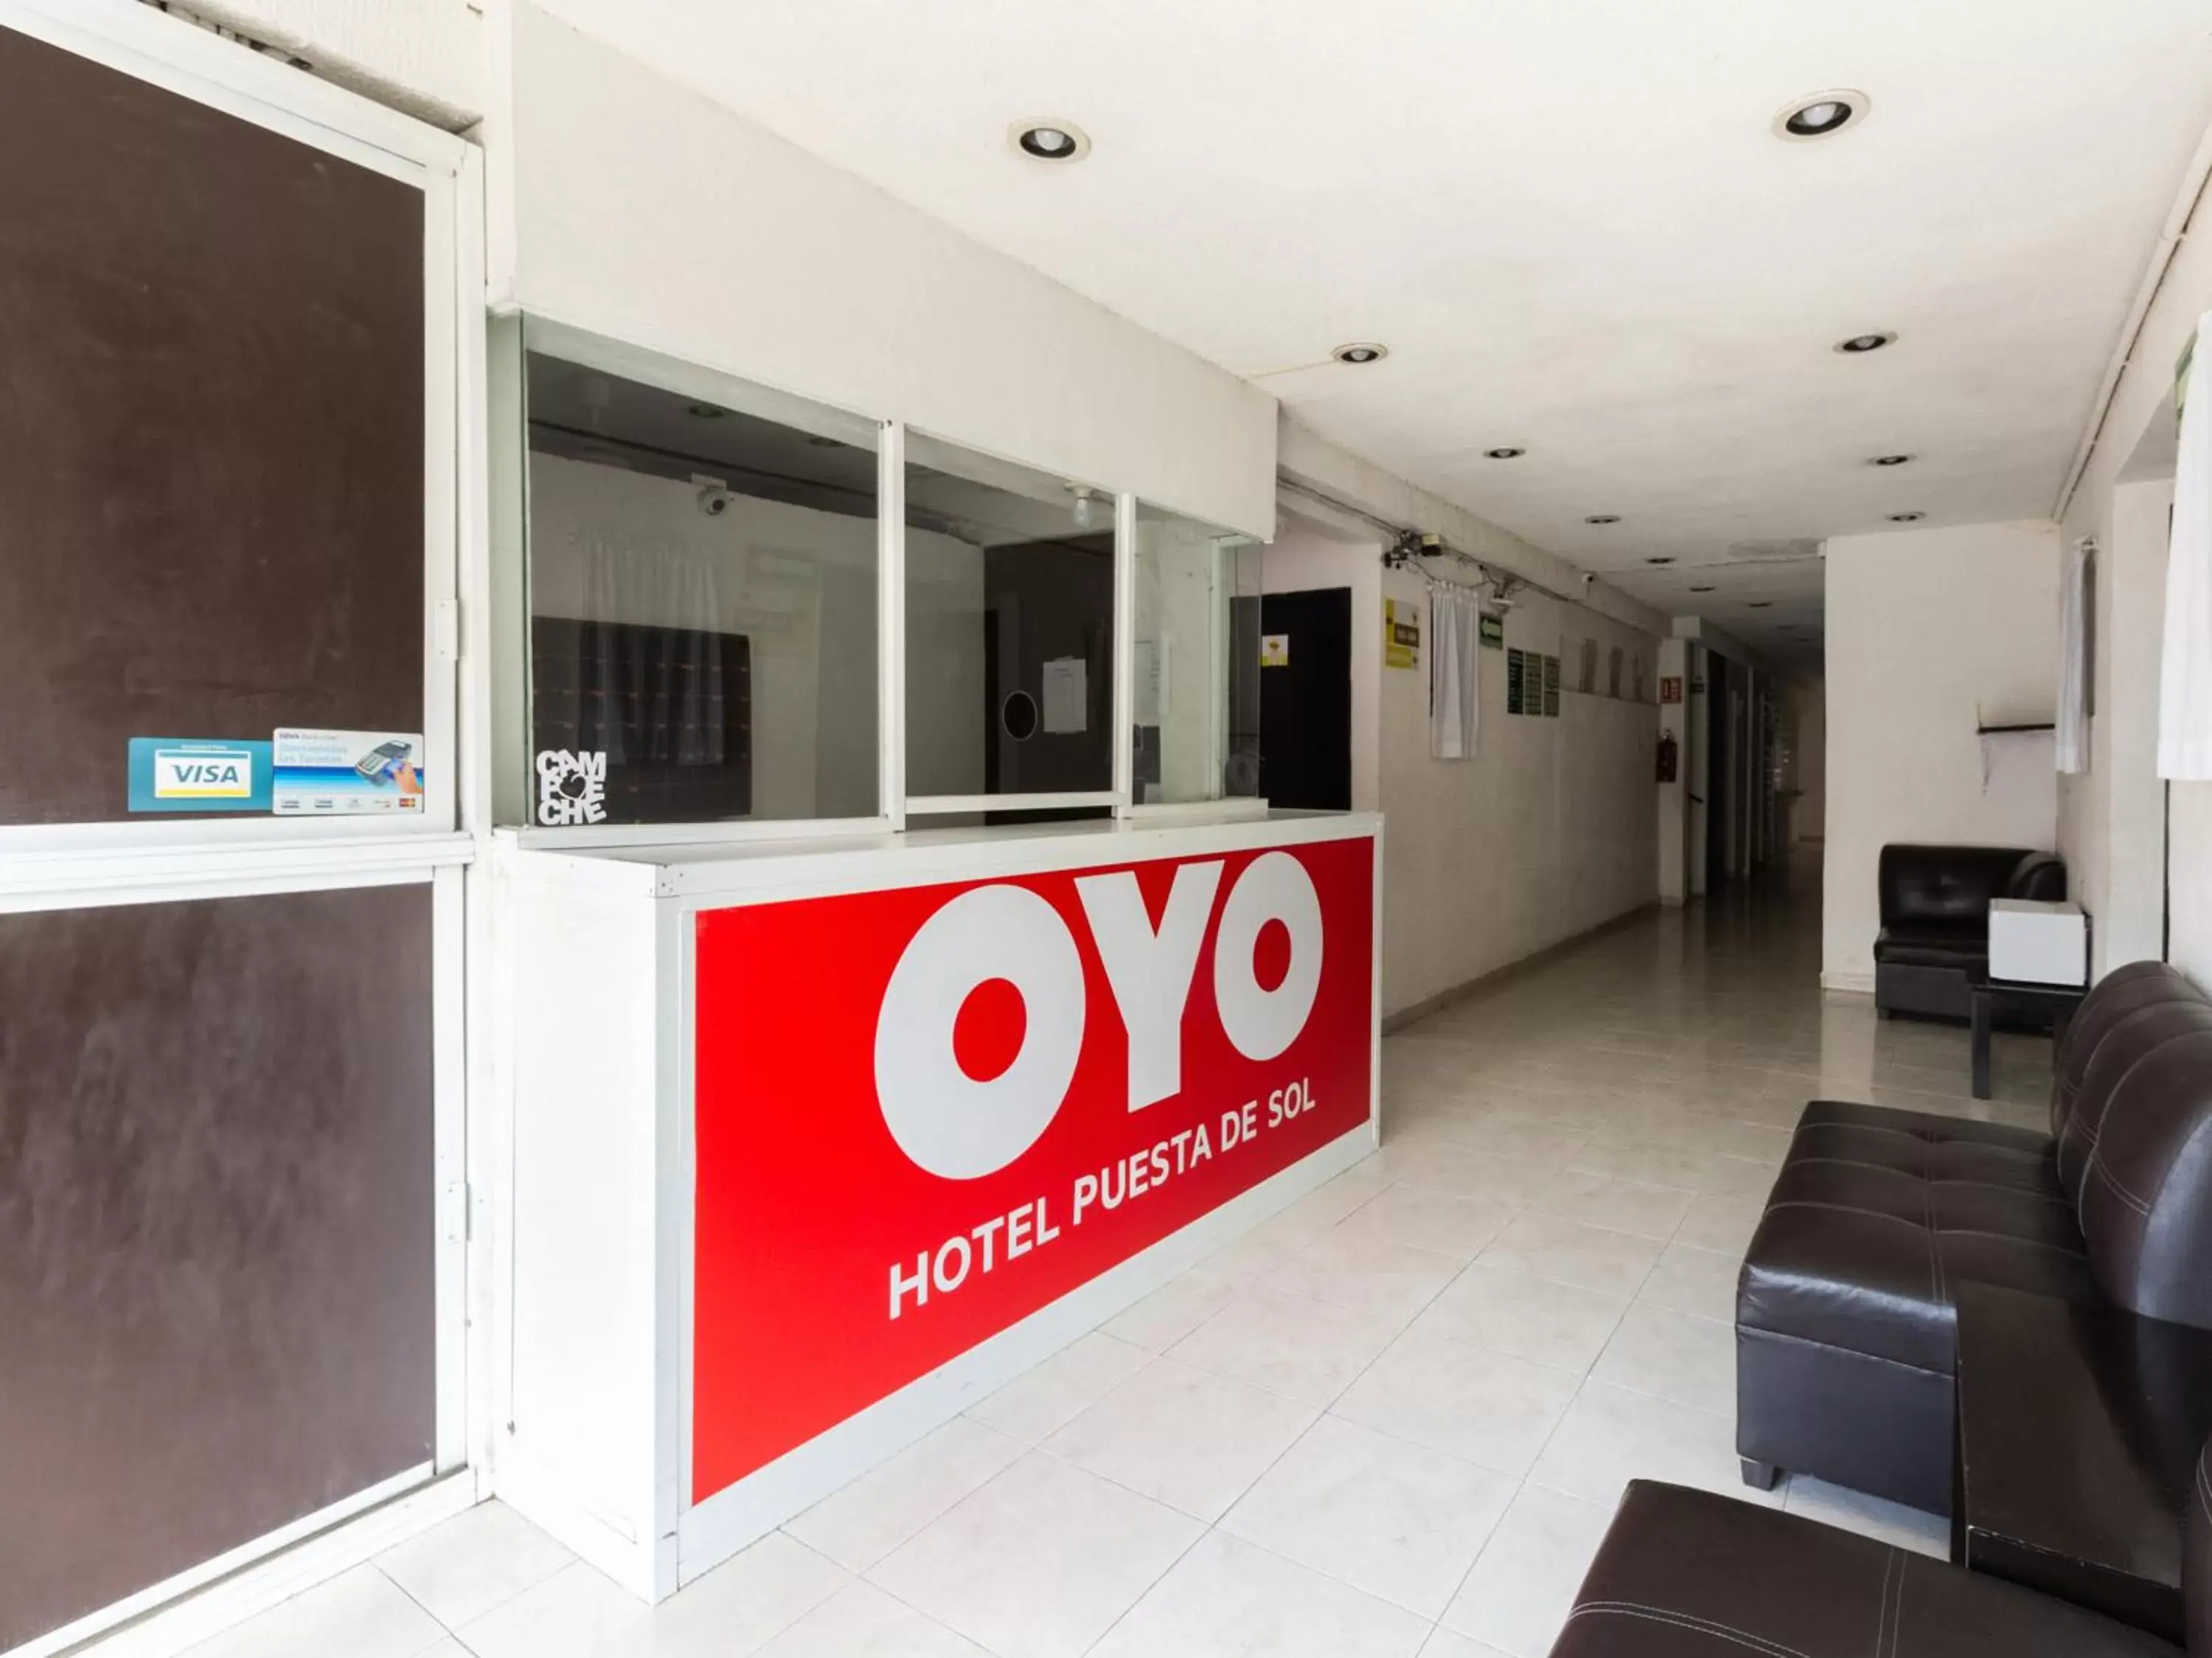 Lobby or reception in OYO Hotel Puesta del Sol, Santa Ana, Campeche